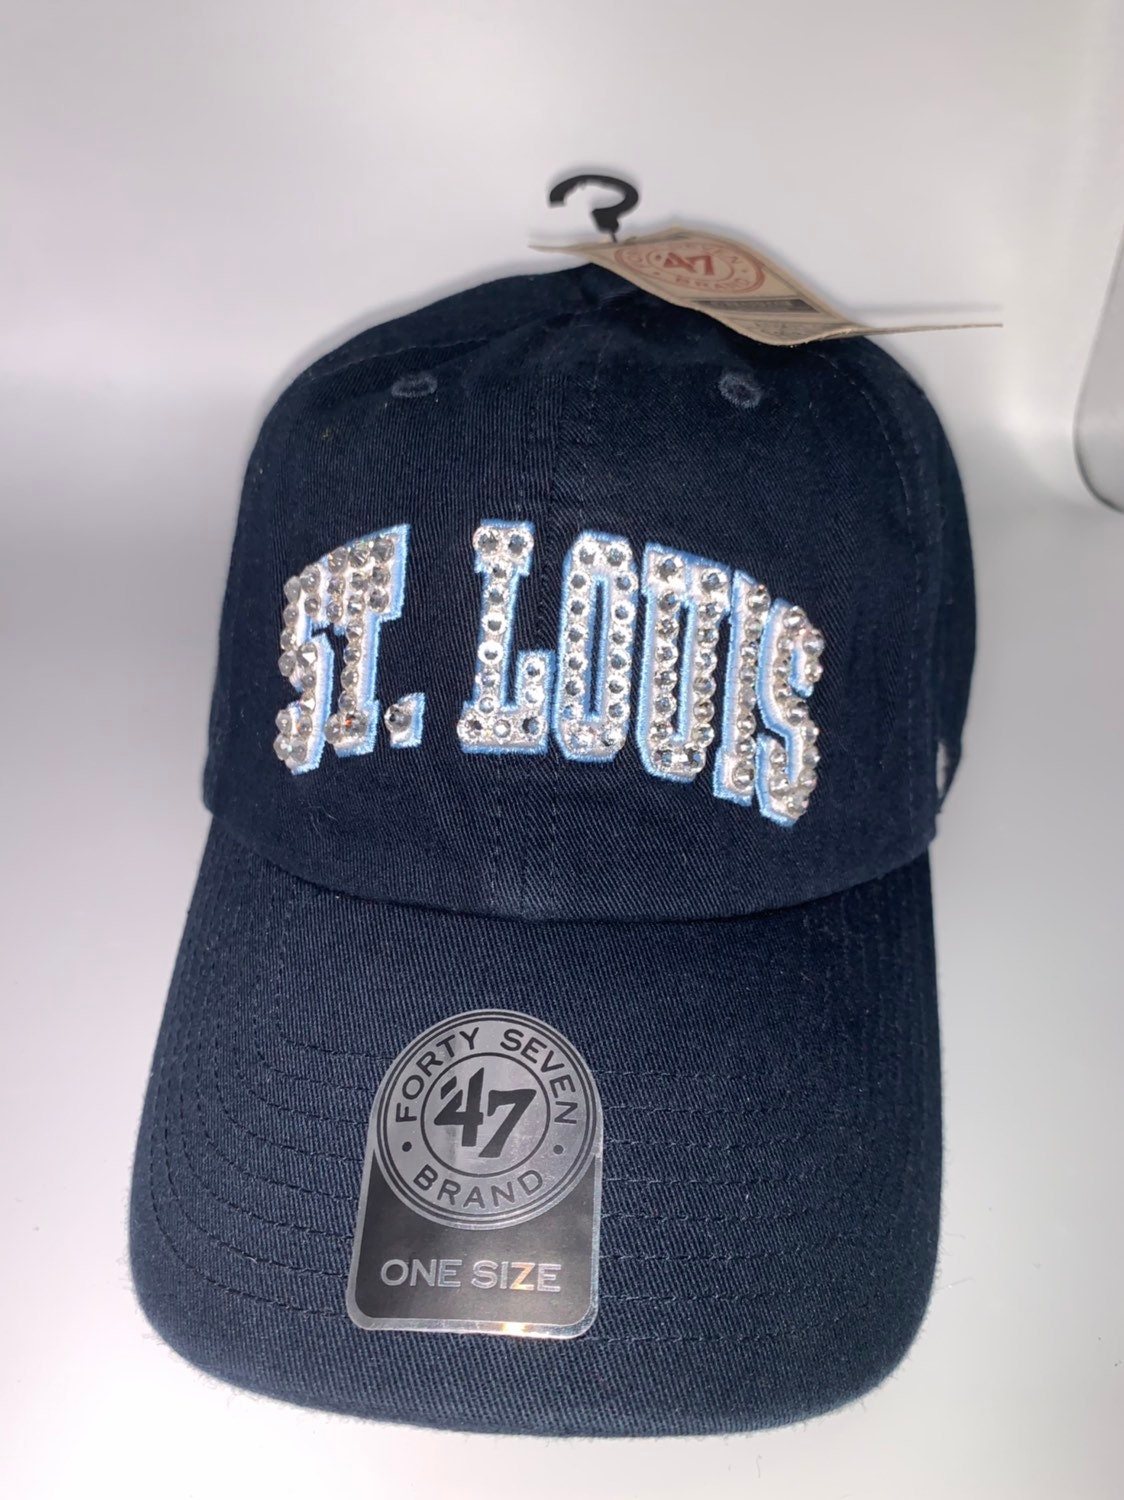 Swarovski crystal bling St. Louis Cardinals adjustable hat | Etsy